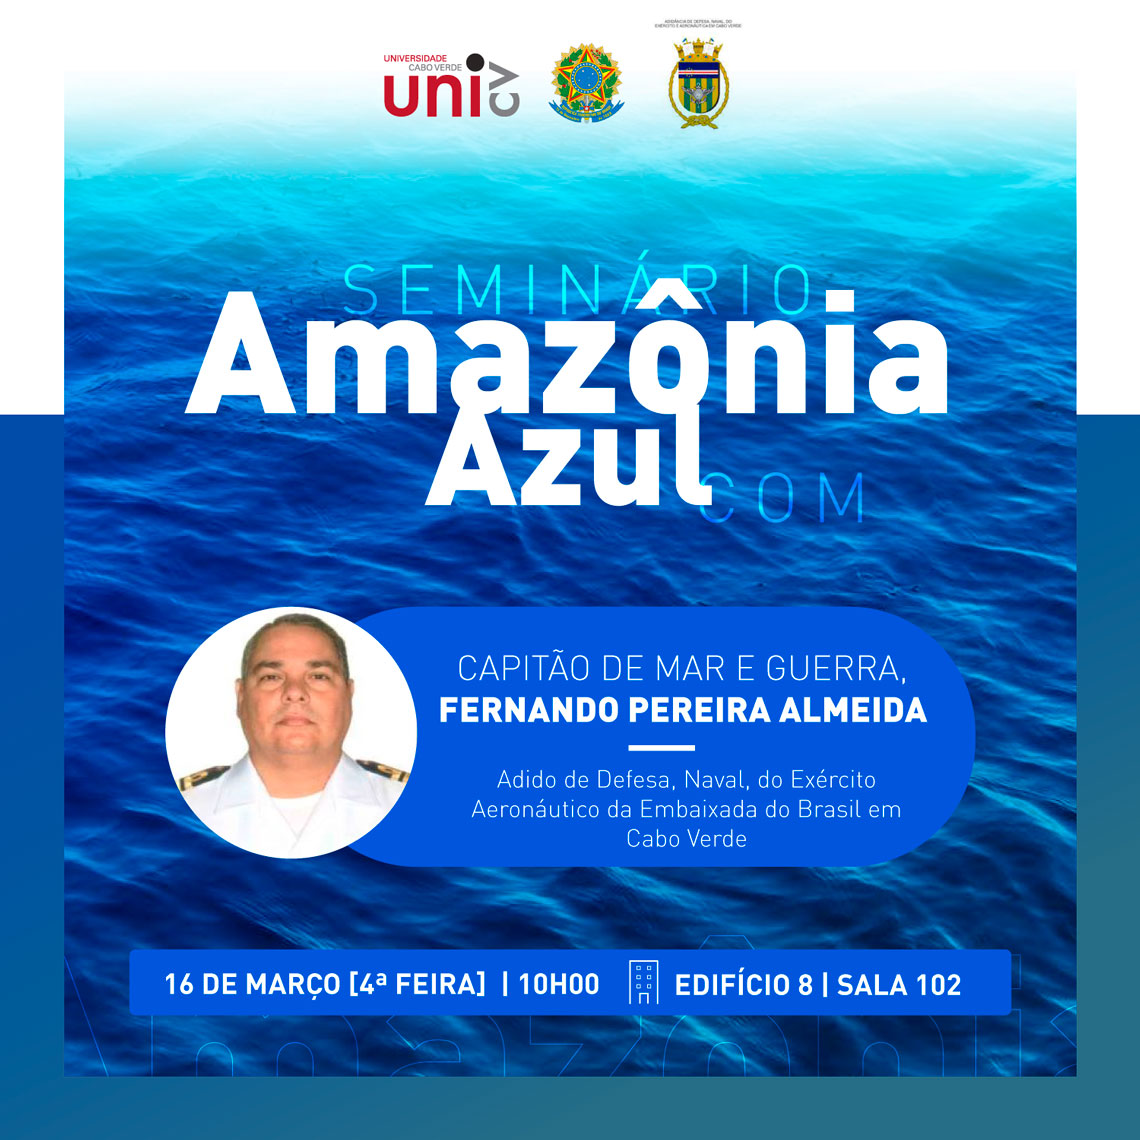 Amazonia_Azul.jpg